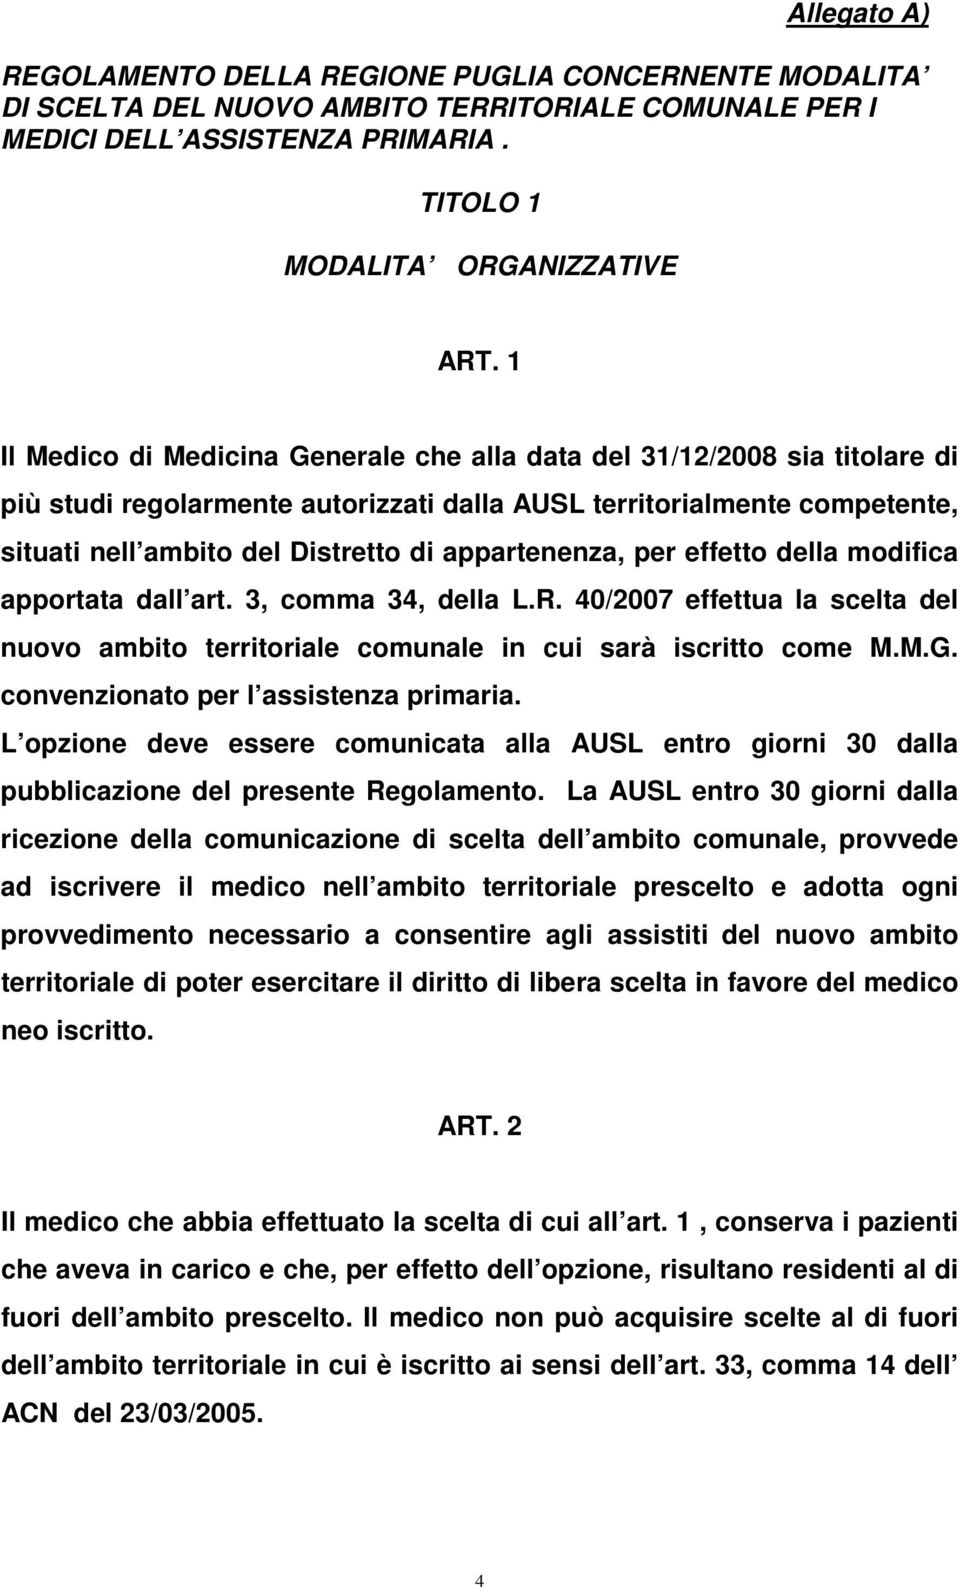 appartenenza, per effetto della modifica apportata dall art. 3, comma 34, della L.R. 40/2007 effettua la scelta del nuovo ambito territoriale comunale in cui sarà iscritto come M.M.G.